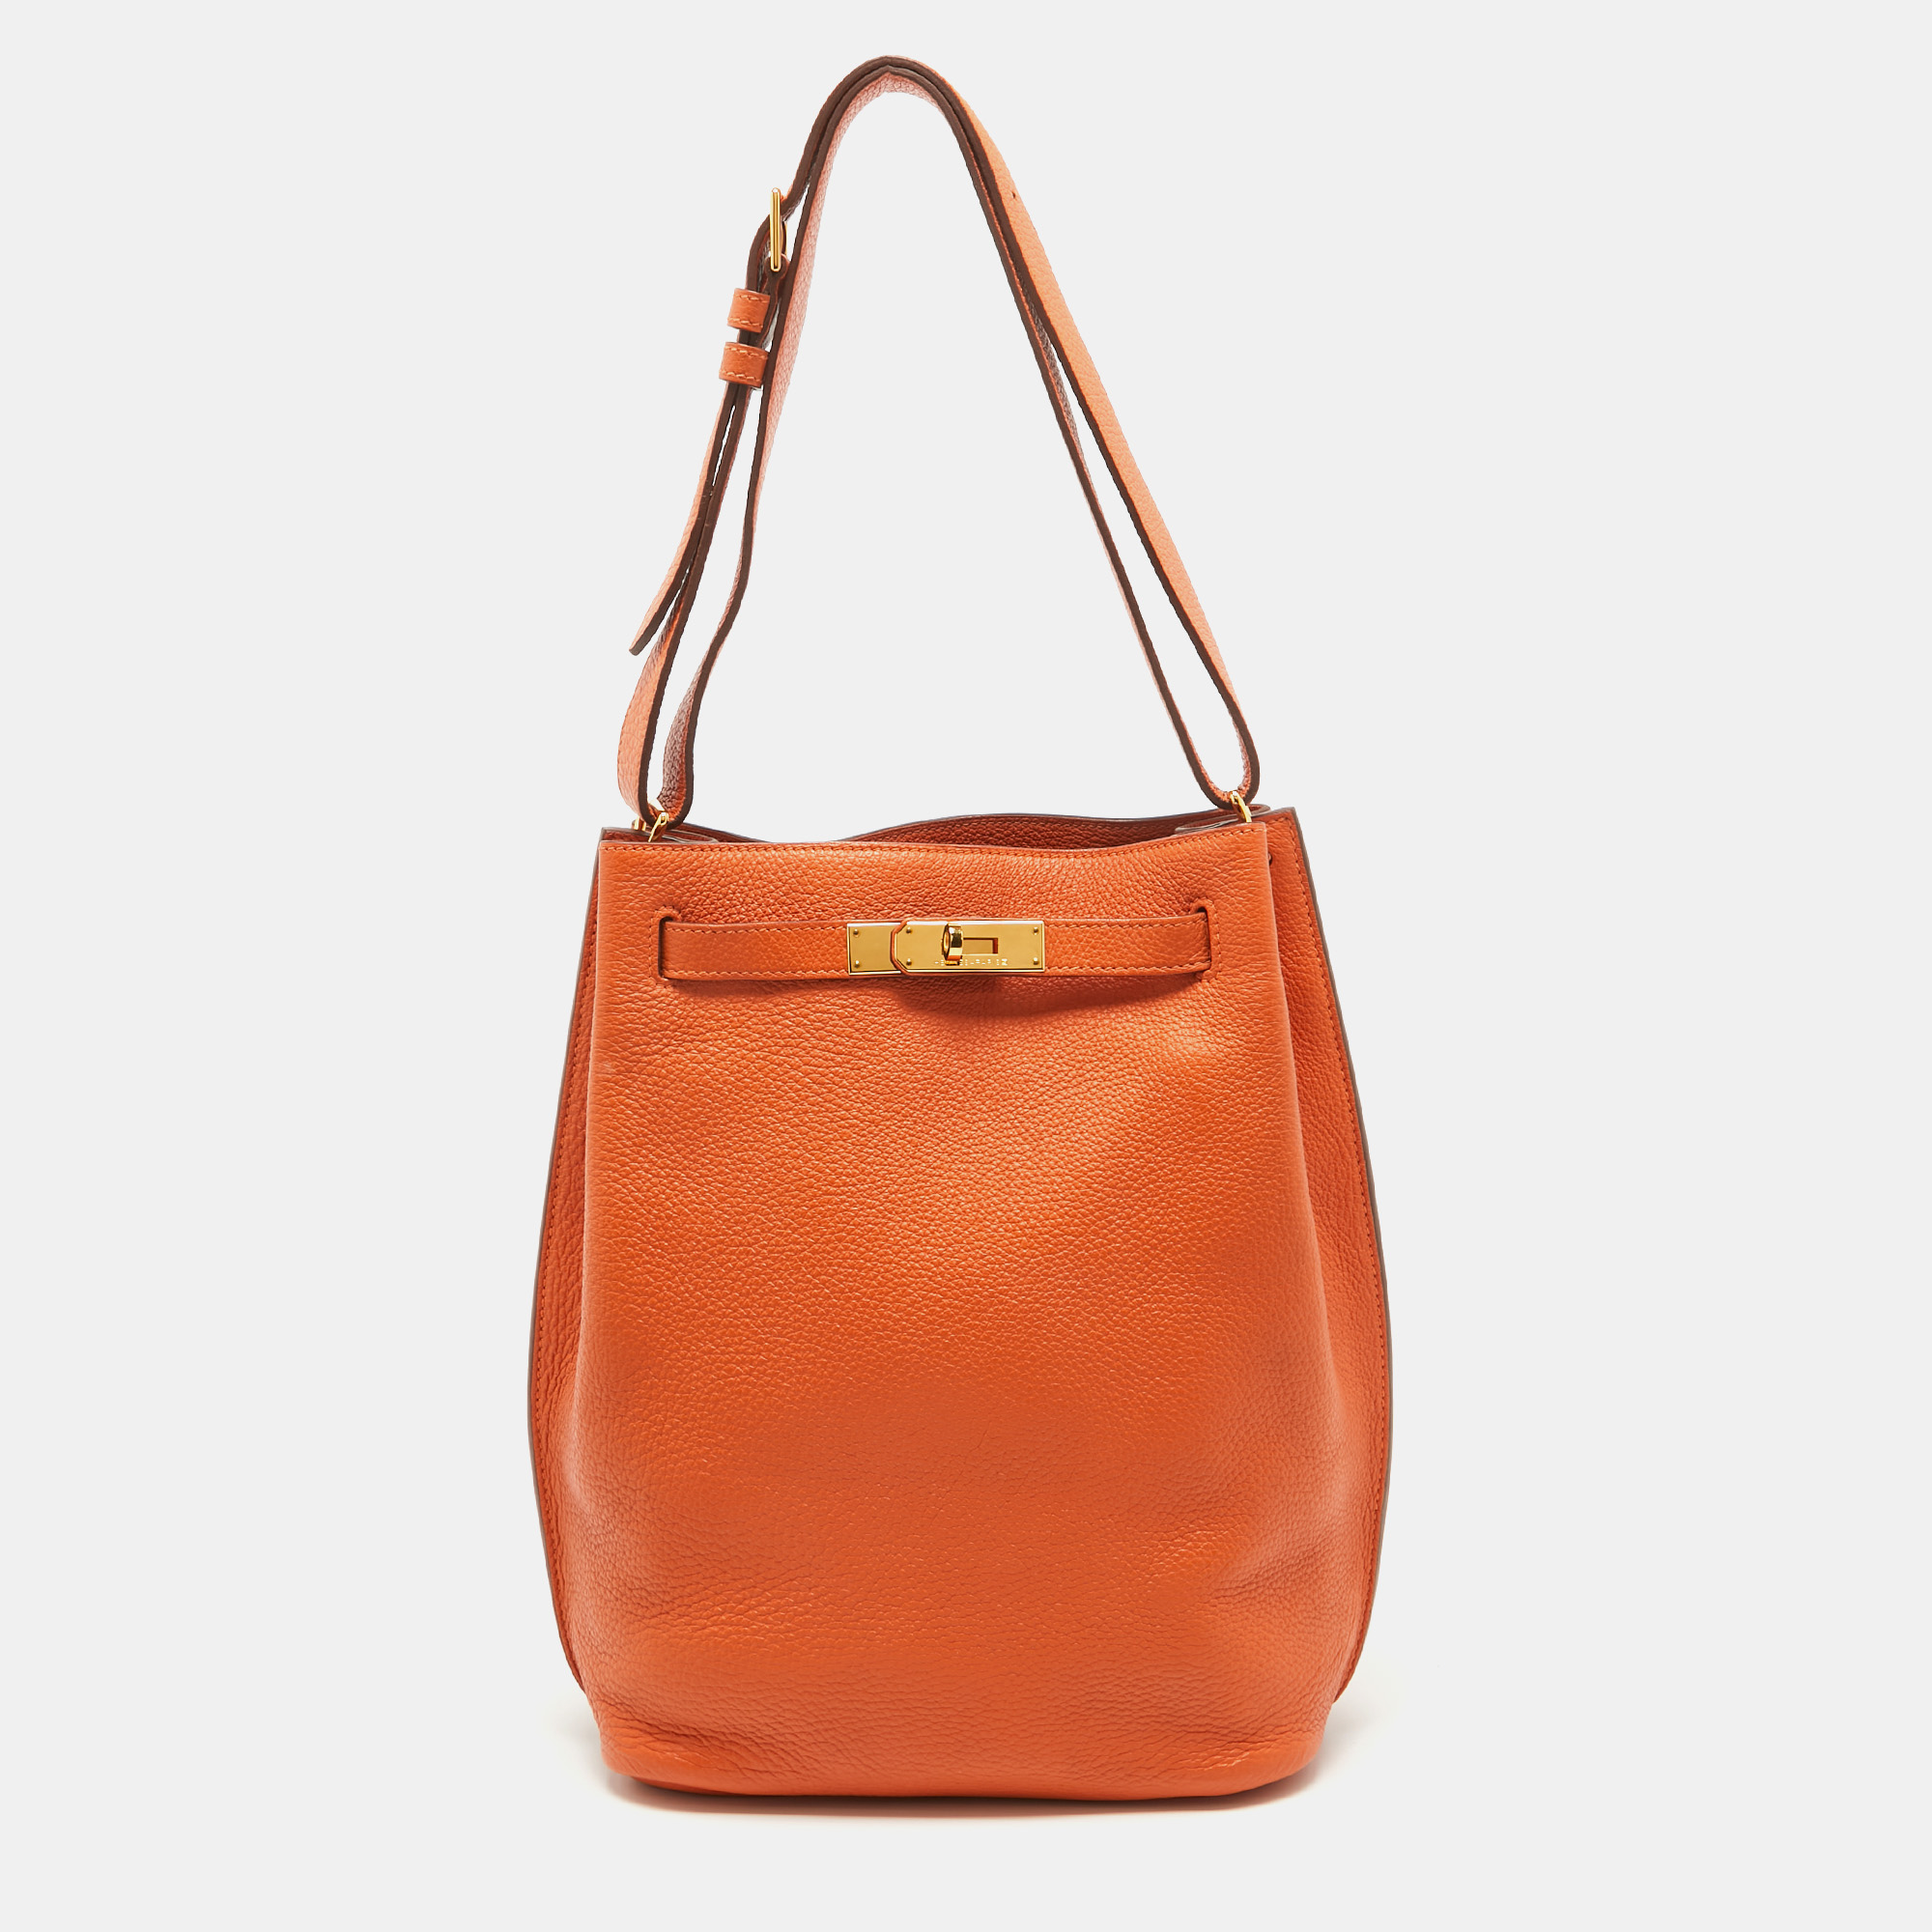 Pre-owned Hermes Orange Togo Leather So Kelly 22 Bag